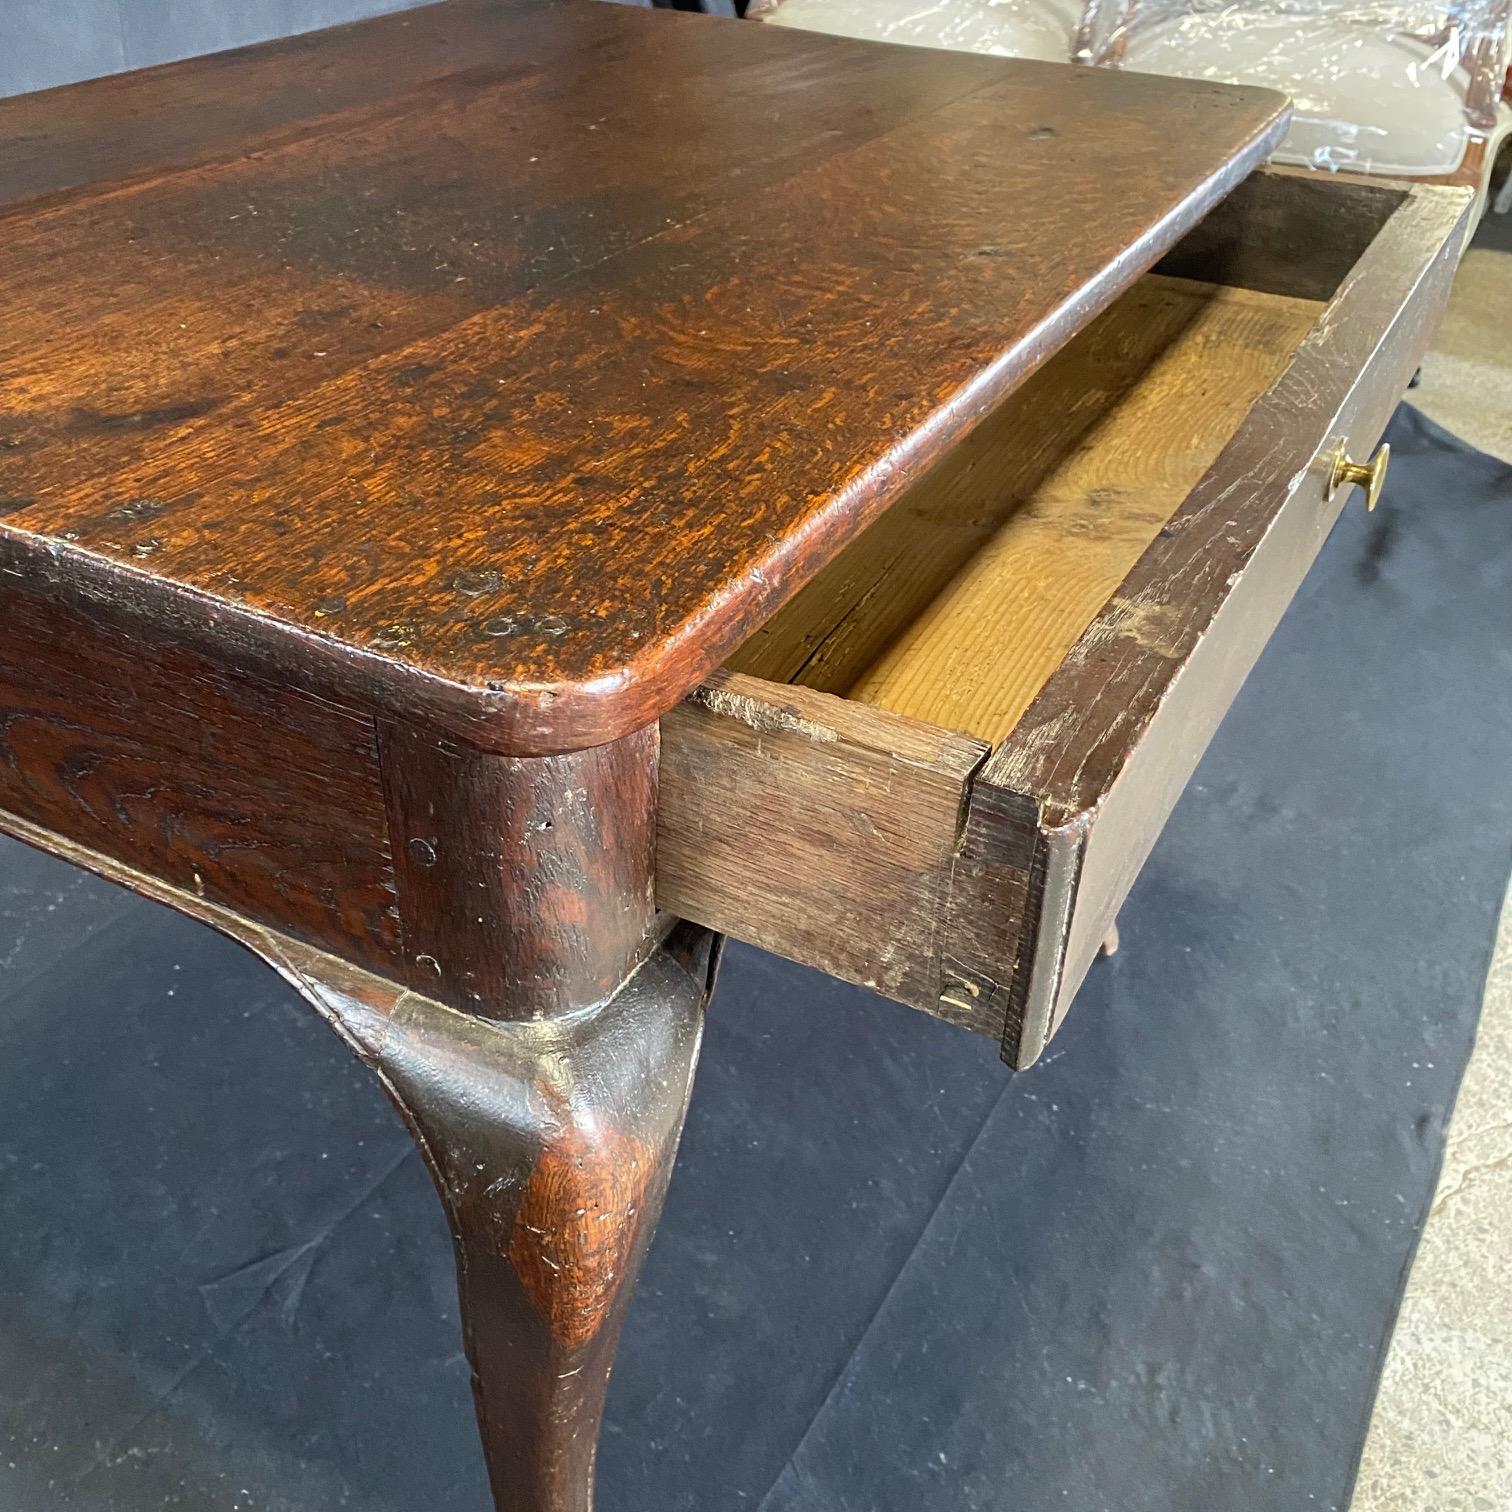 Eleganter Louis XV Beistelltisch oder kleinerer Schreibtisch, gekauft in Avignon, Frankreich. Dieser stilvolle französische Beistelltisch aus massiver Eiche mit einer Schublade und frühen Zapfenverbindungen ruht auf vier hübschen, beschlagenen